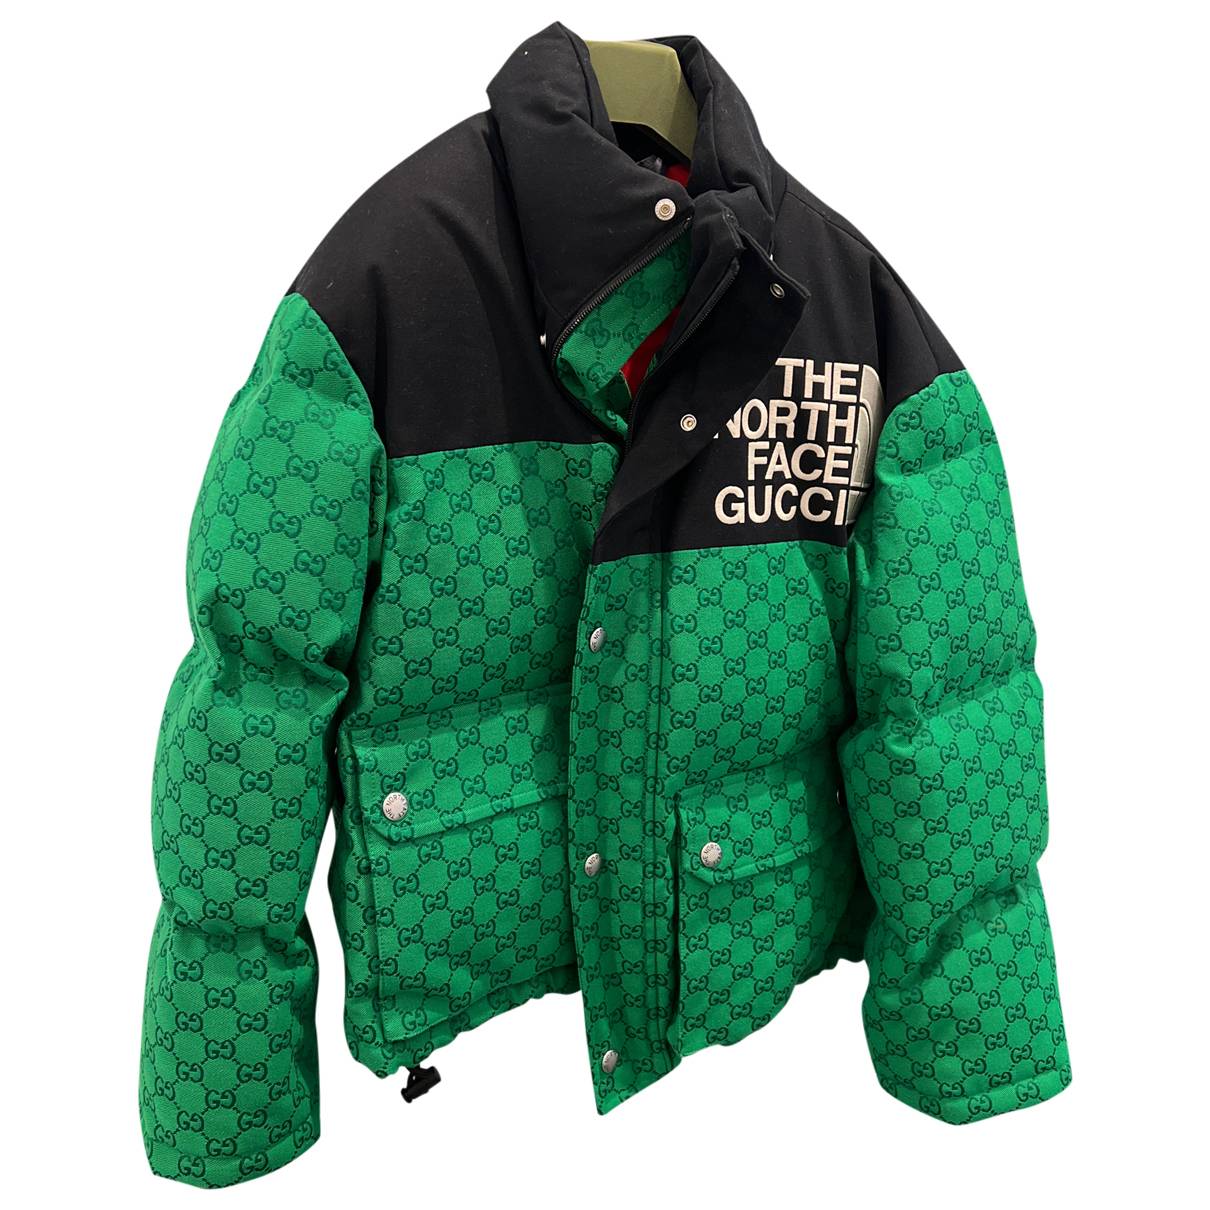 Gucci, Jackets & Coats, Gucci North Face Coat Black